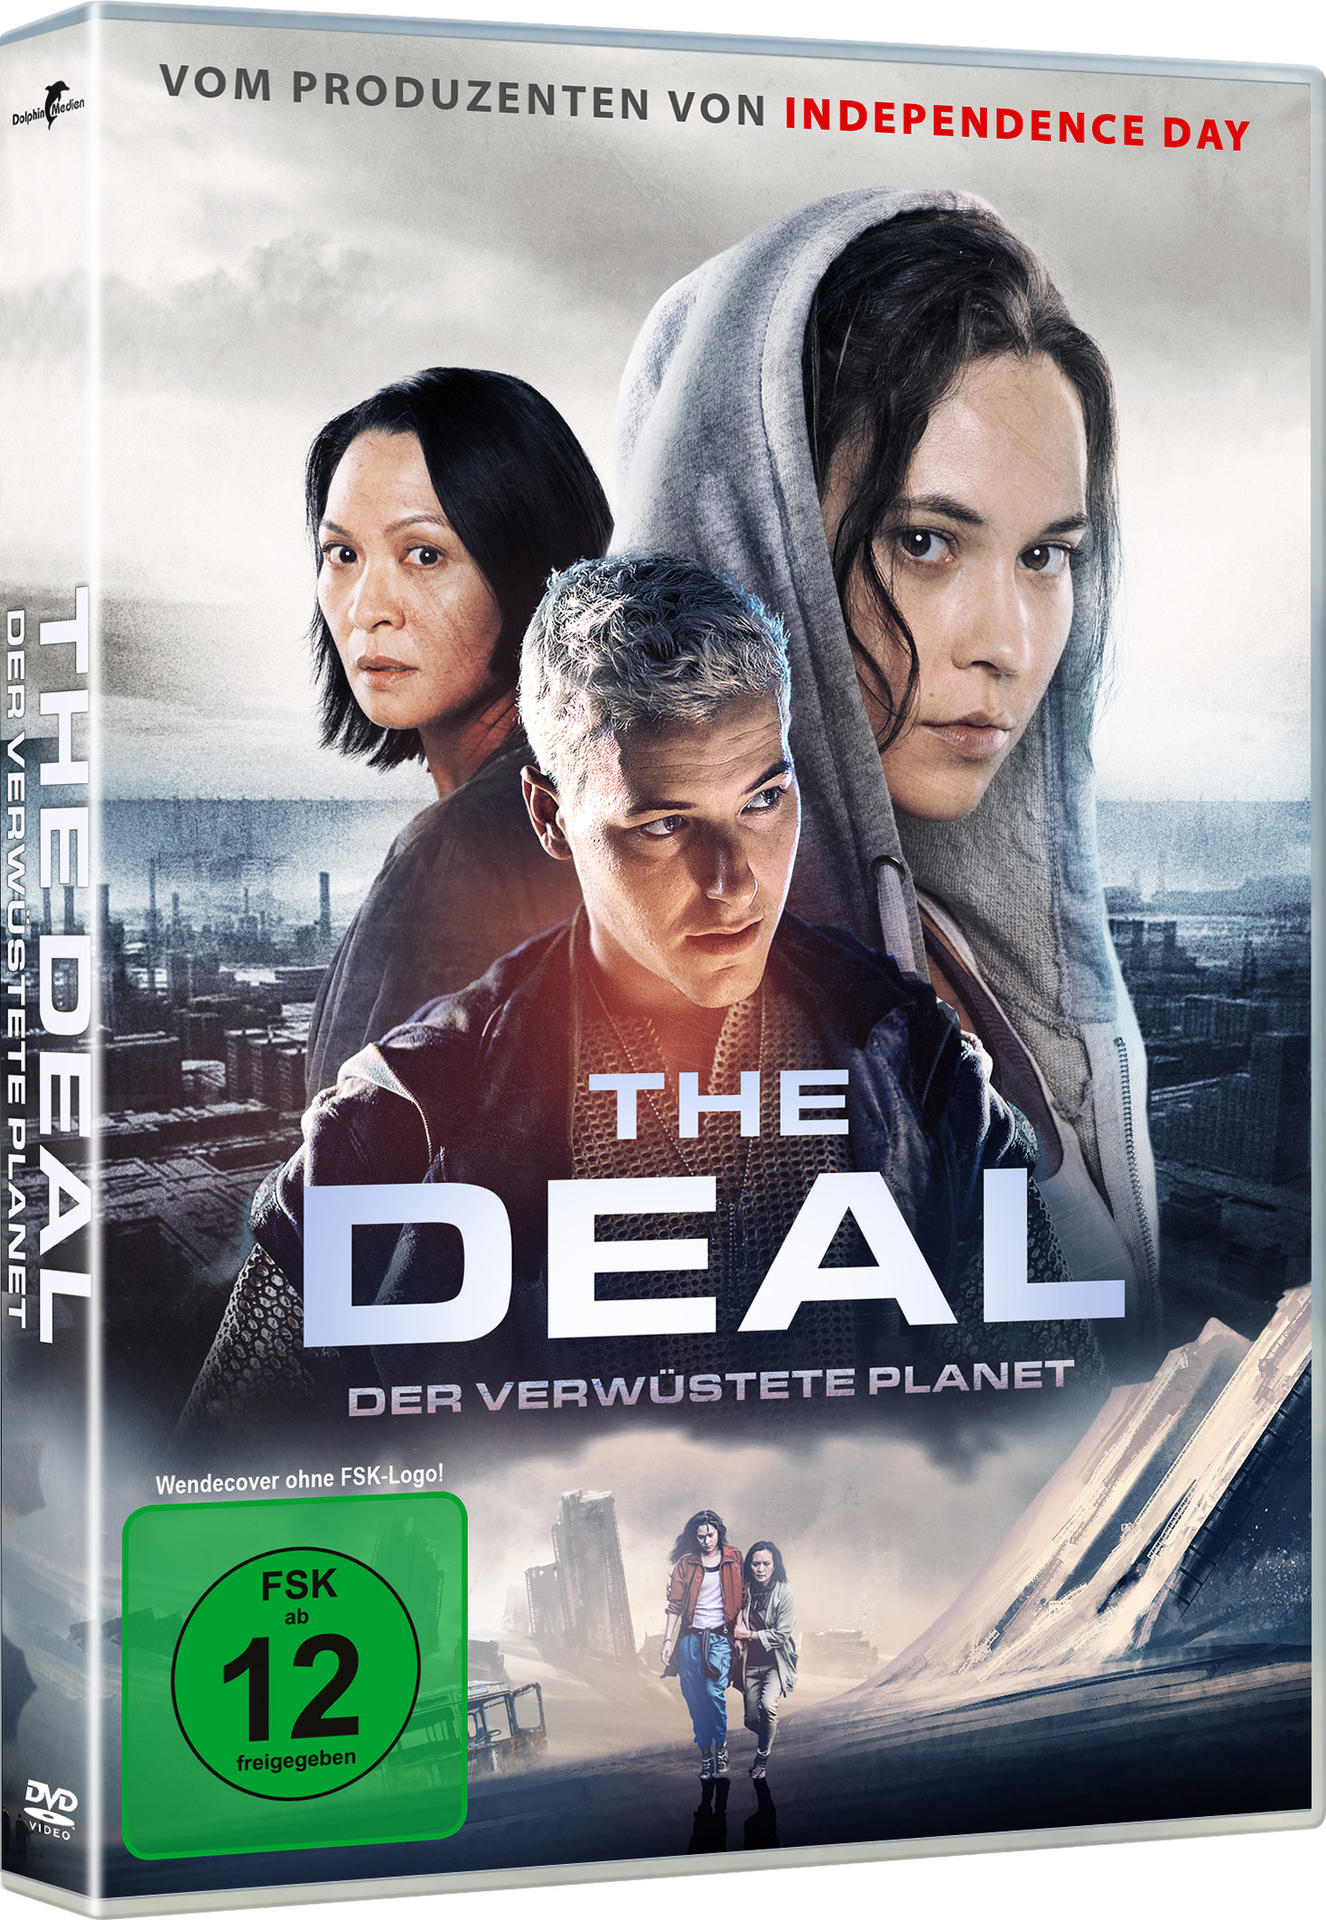 The Deal - Der DVD Planet verwüstete